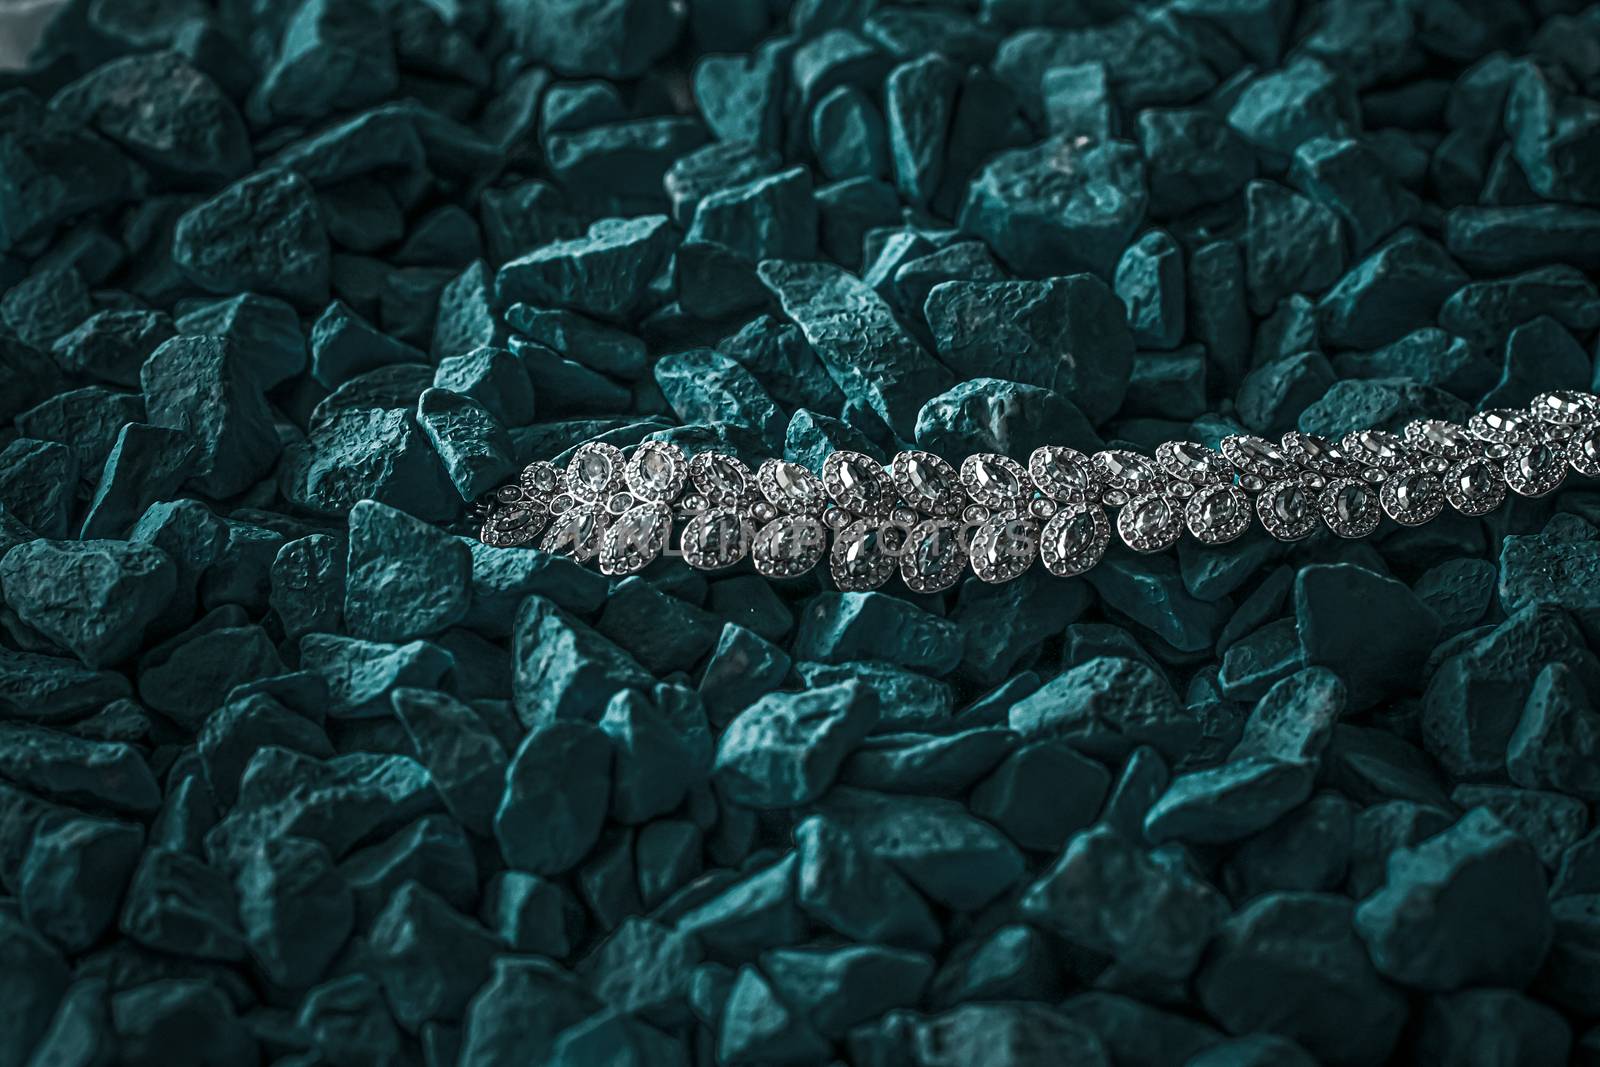 Luxury diamond bracelet, jewelry and fashion brands